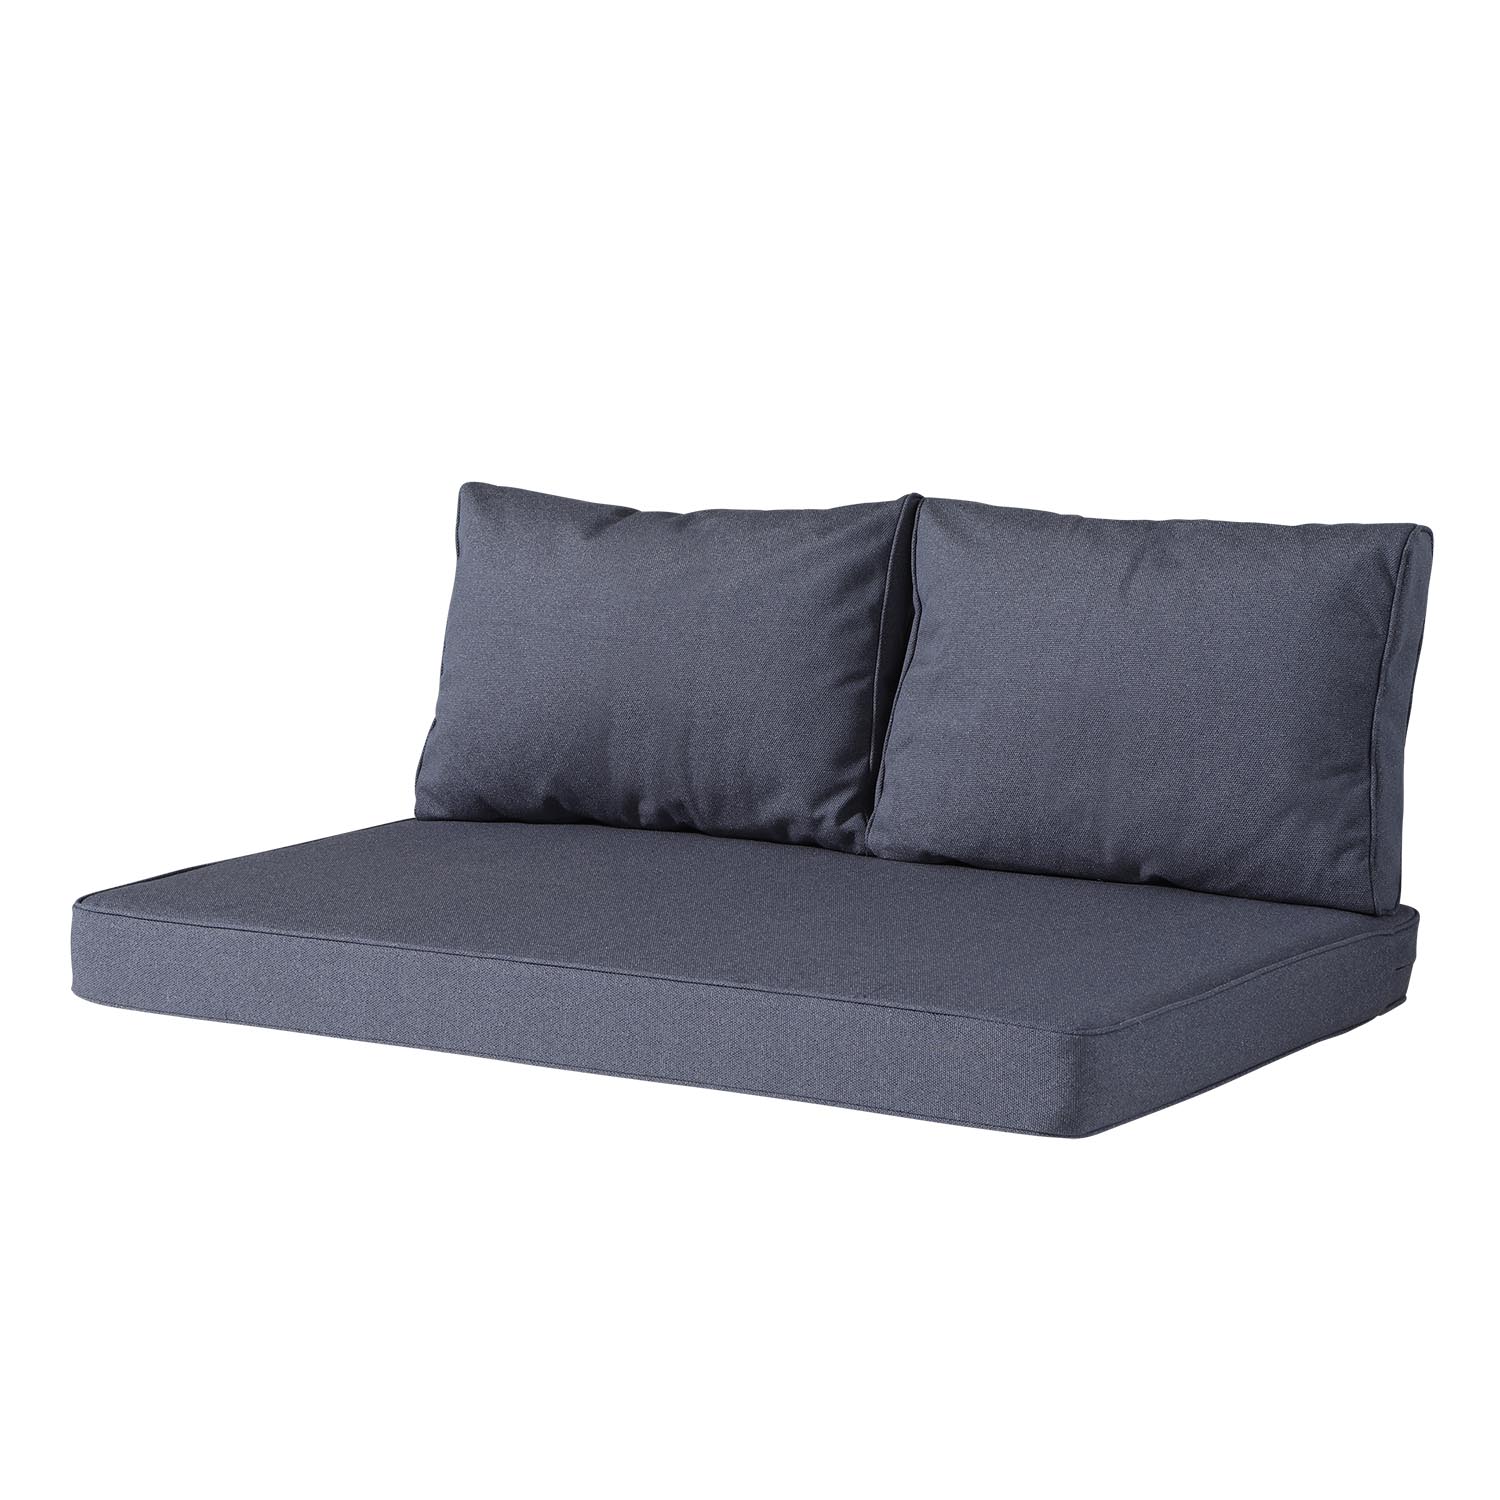 Palettenkissen Sitz und Rücken (120x80cm) - manchester denim grey